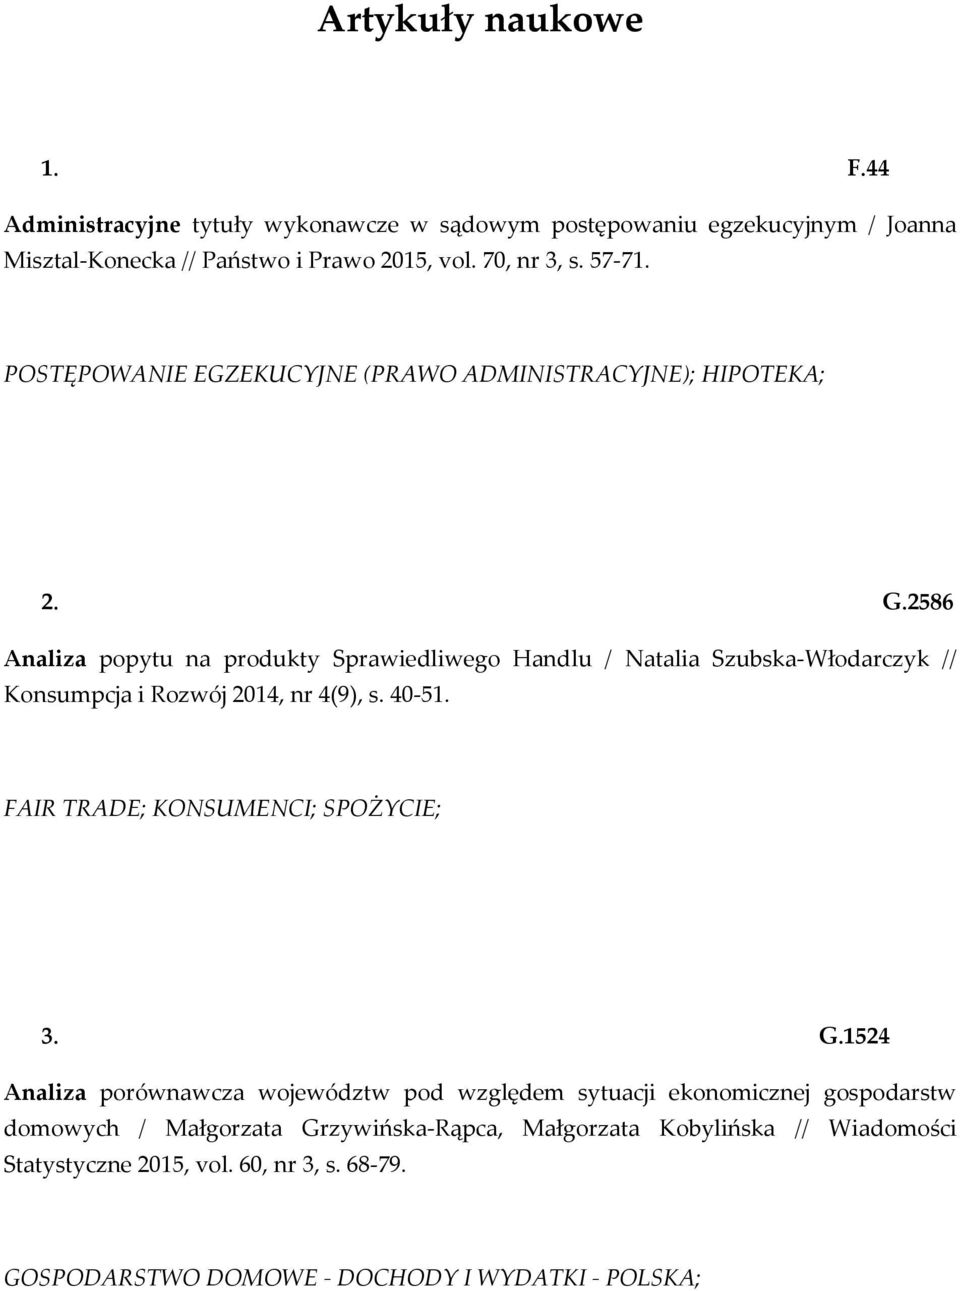 2586 Analiza popytu na produkty Sprawiedliwego Handlu / Natalia Szubska-Włodarczyk // Konsumpcja i Rozwój 2014, nr 4(9), s. 40-51.